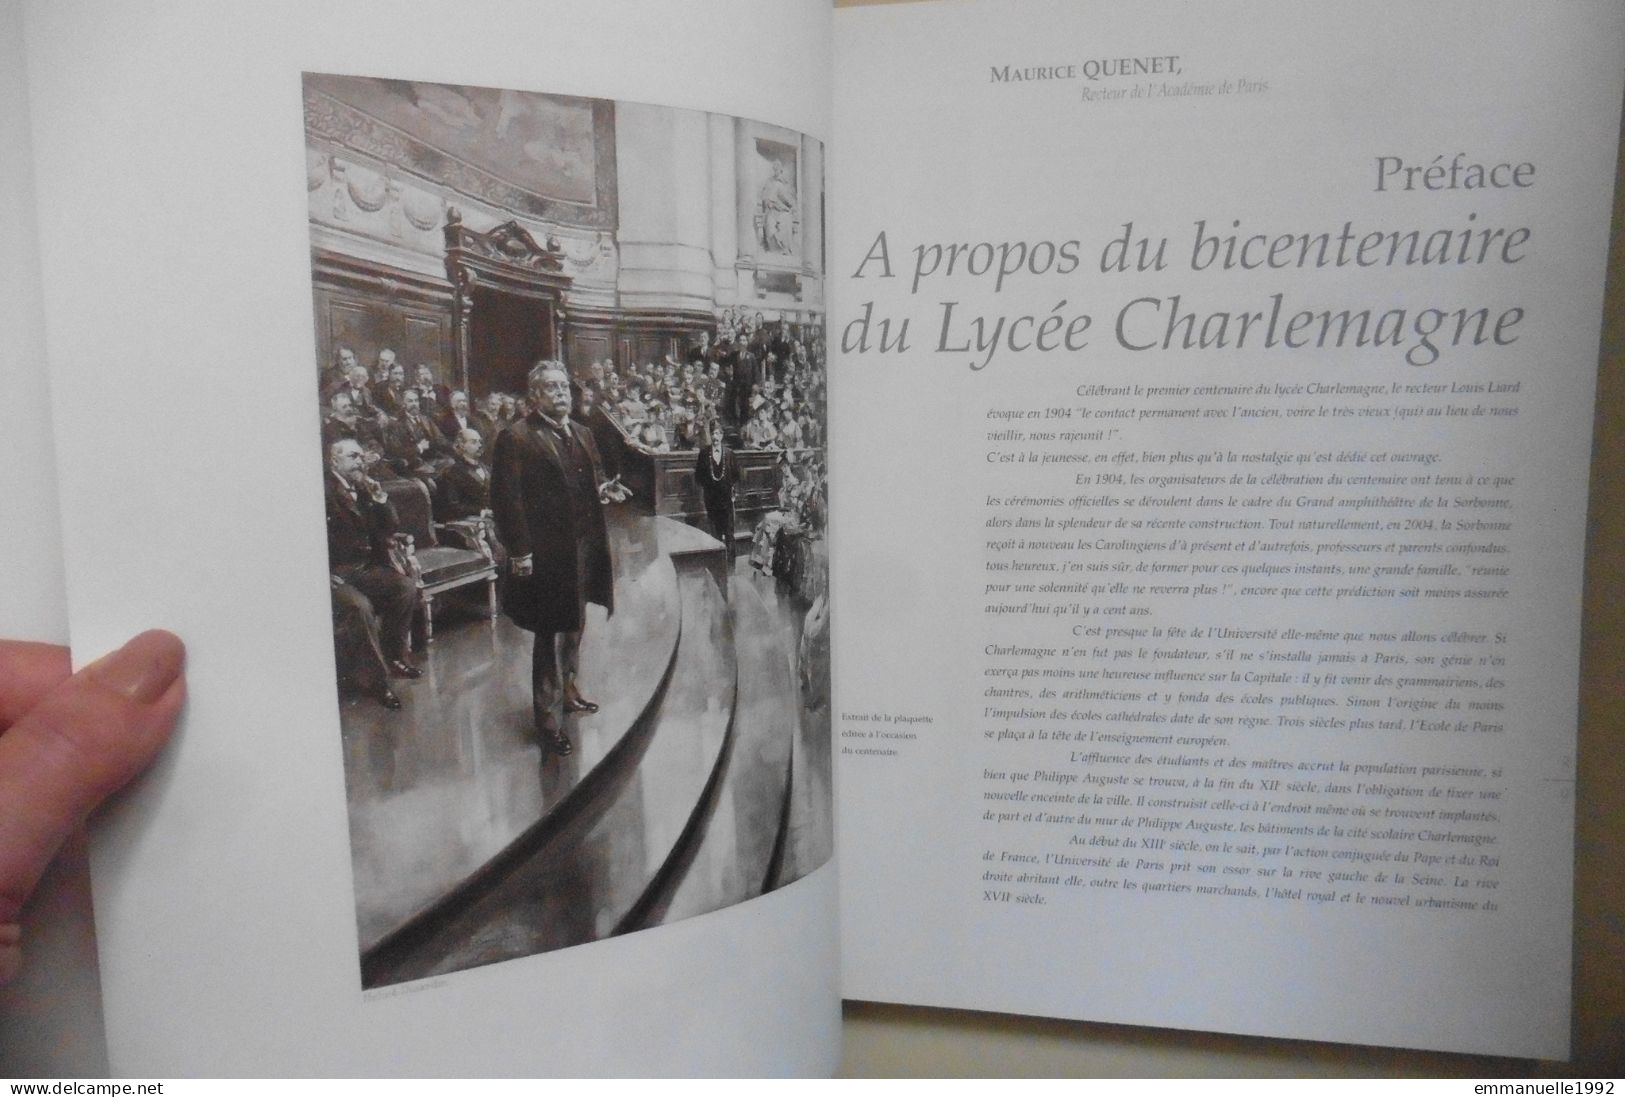 Livre Le Lycée Charlemagne Au Marais à Paris 1804-2004 Bicentenaire Du Lycée - Storia